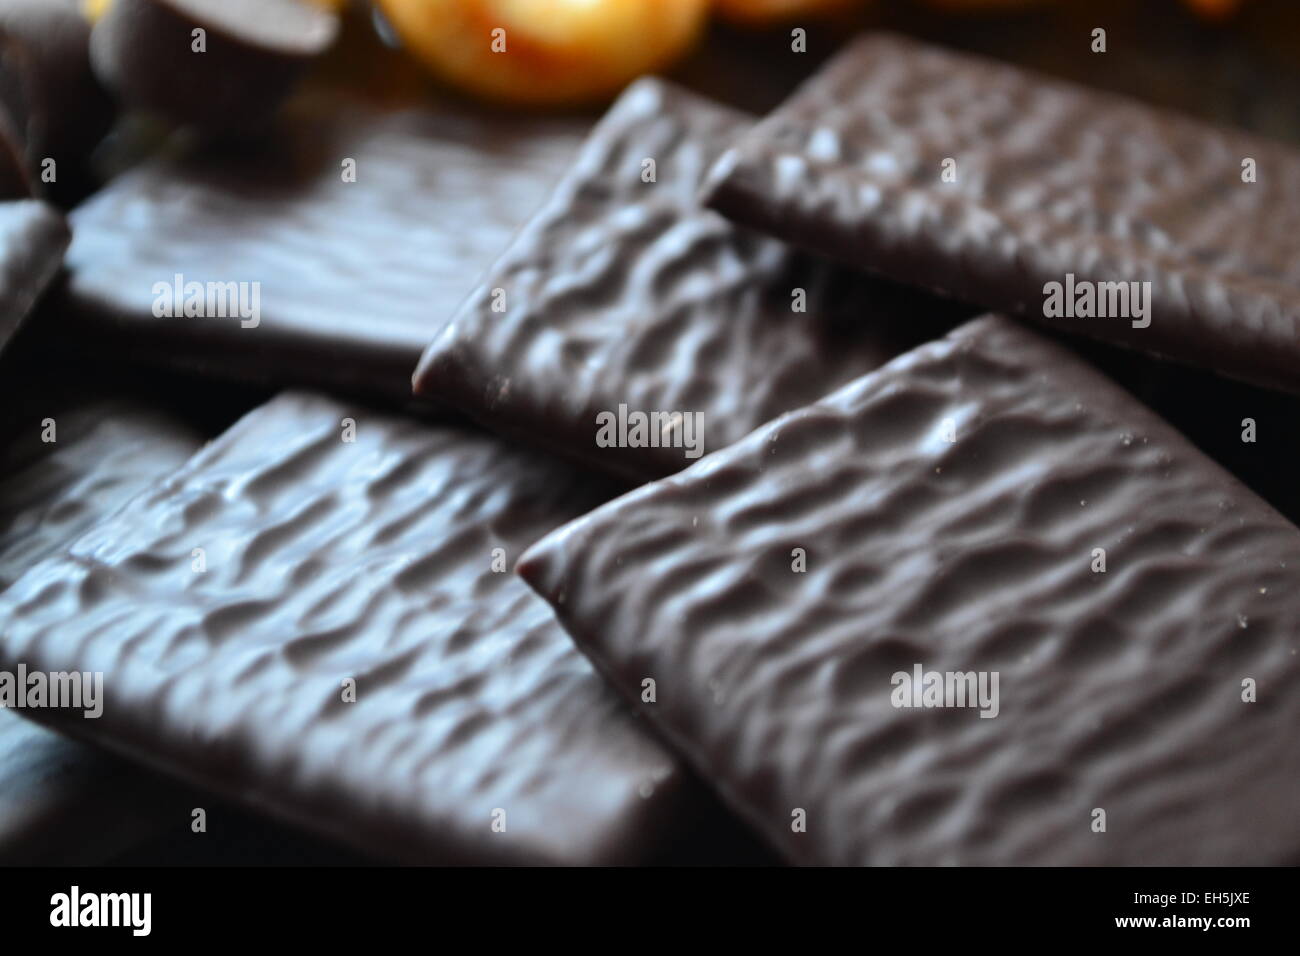 Lieben Sie quadratische Schokolade. Stockfoto